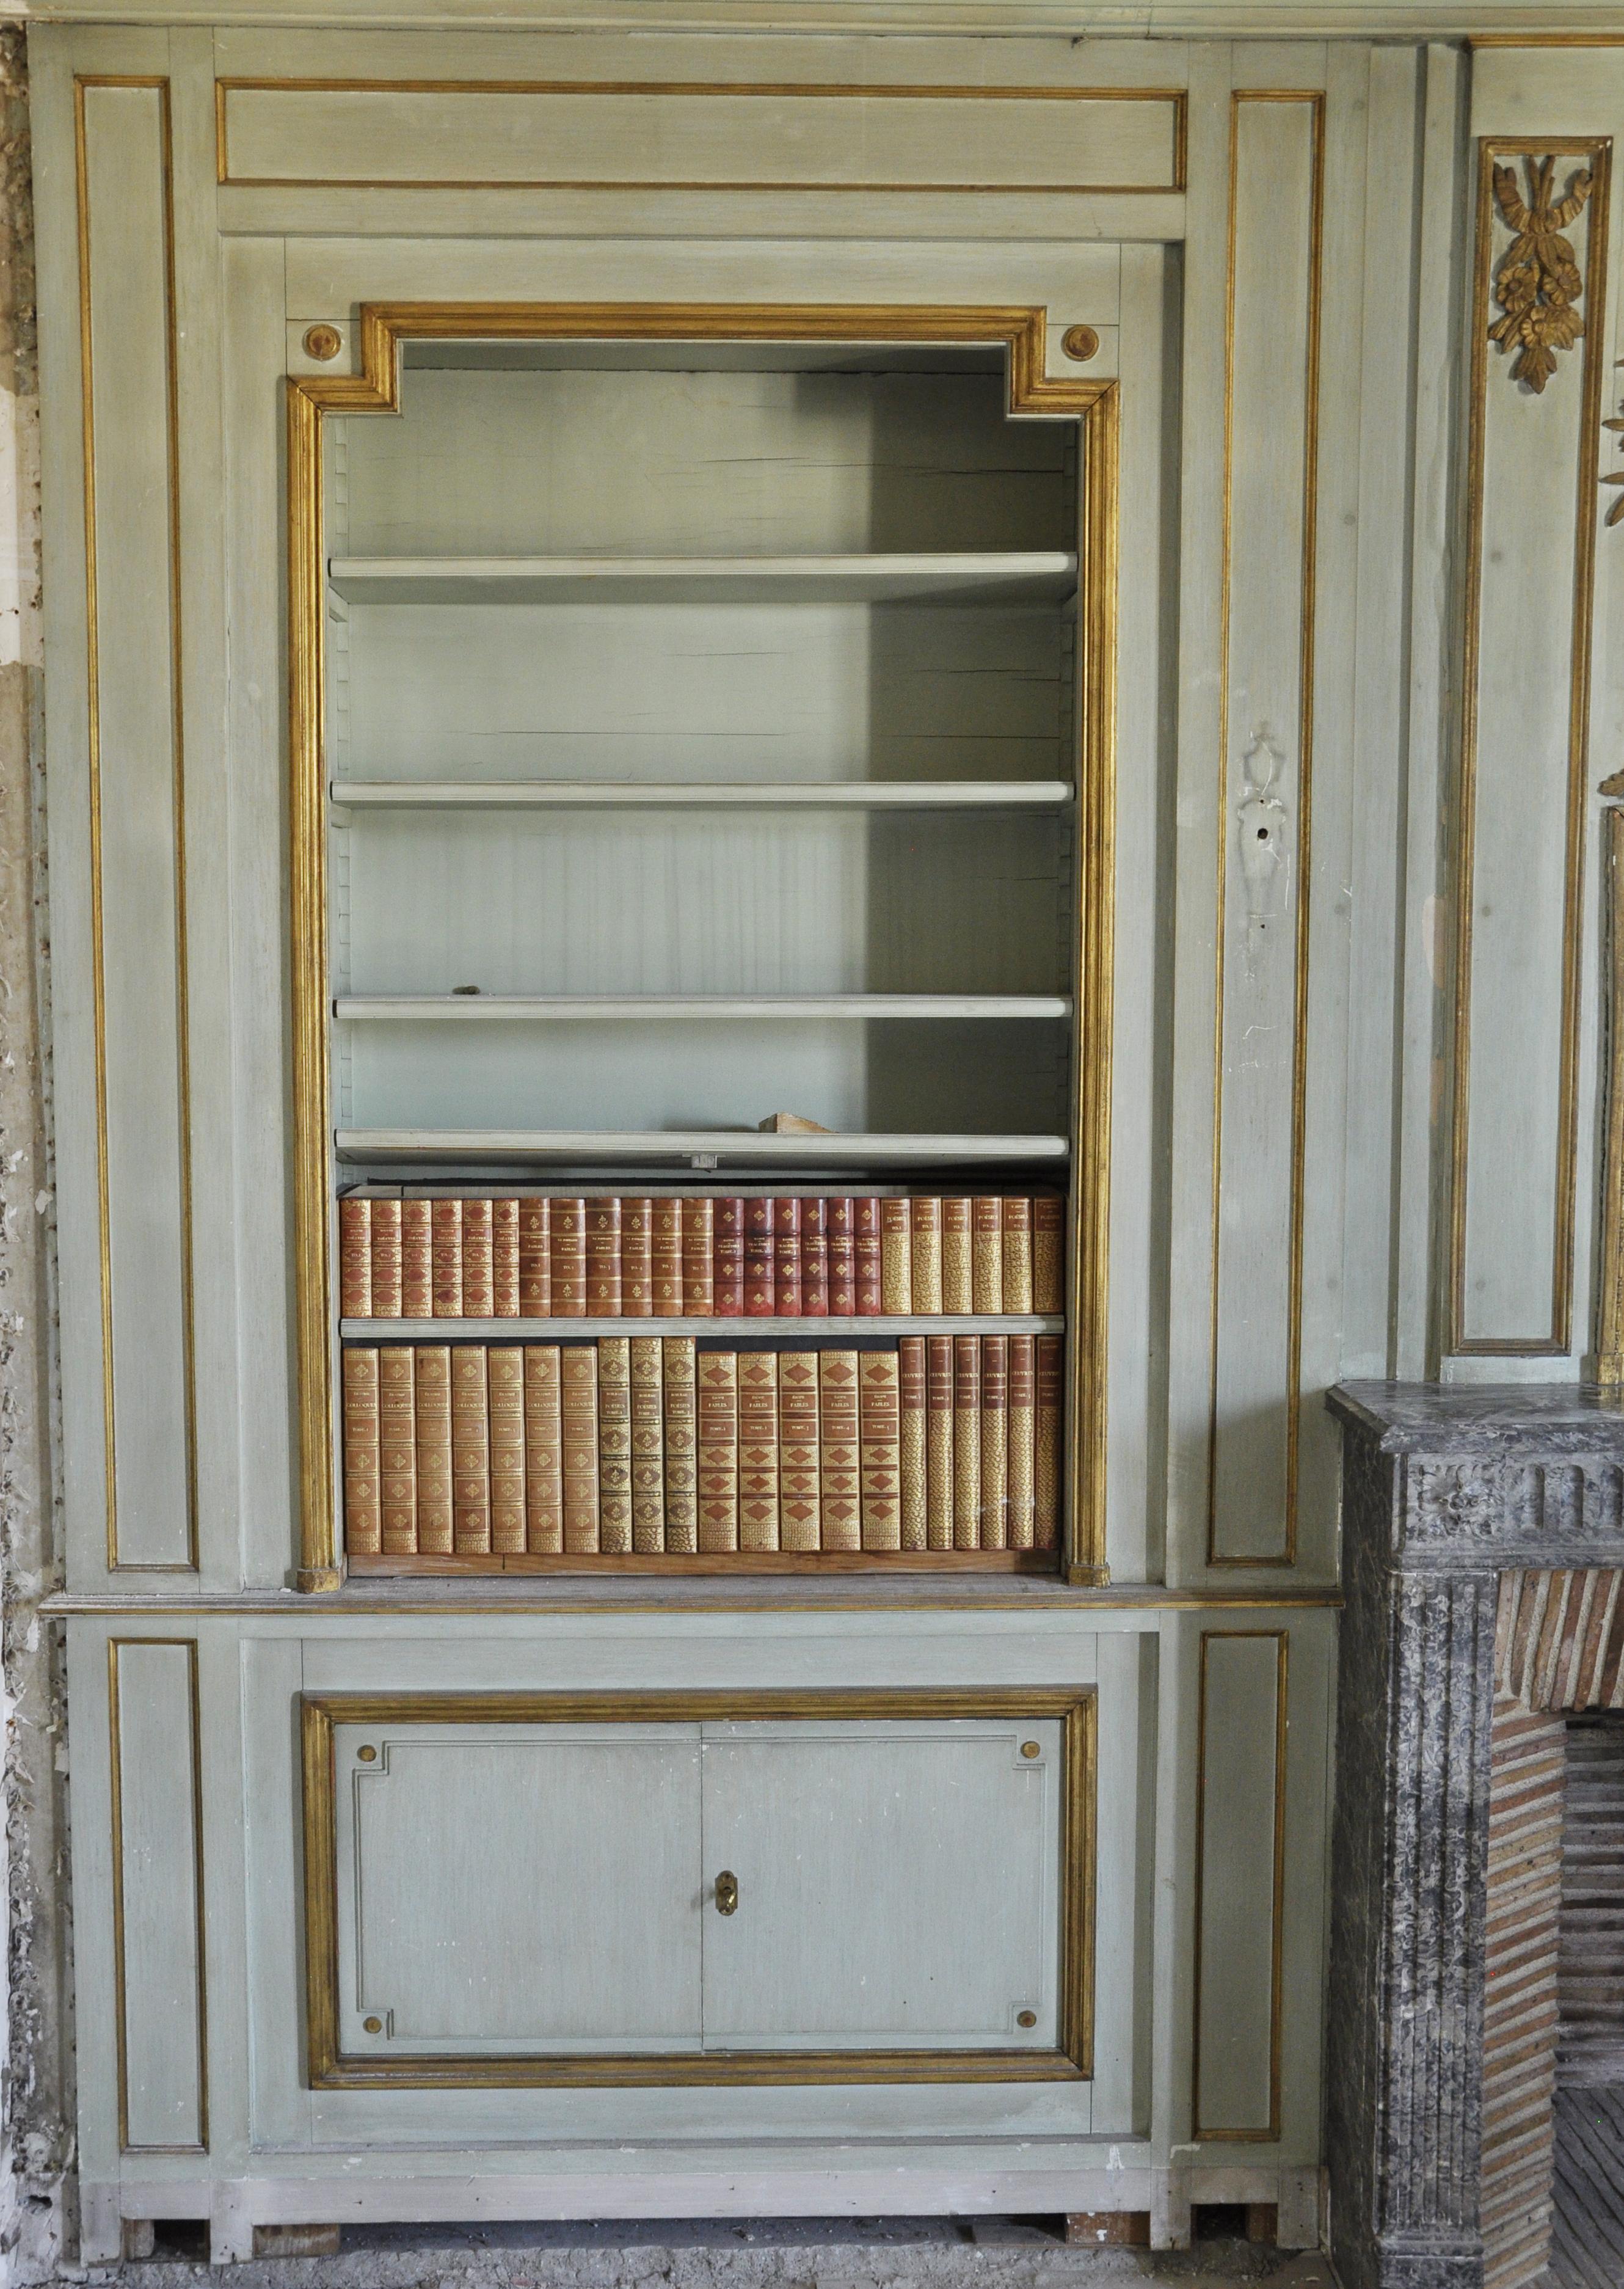 Dieses getäfelte Zimmer im Stil Louis XVI besteht aus zwei Regalen und Schränken mit Flügeltüren aus hellgrün gestrichenem Holz aus dem 20. Jahrhundert.
Sie umrahmen einen Kaminsims aus grauem Marmor Saint-Anne aus der Zeit Ludwigs XVI. mit